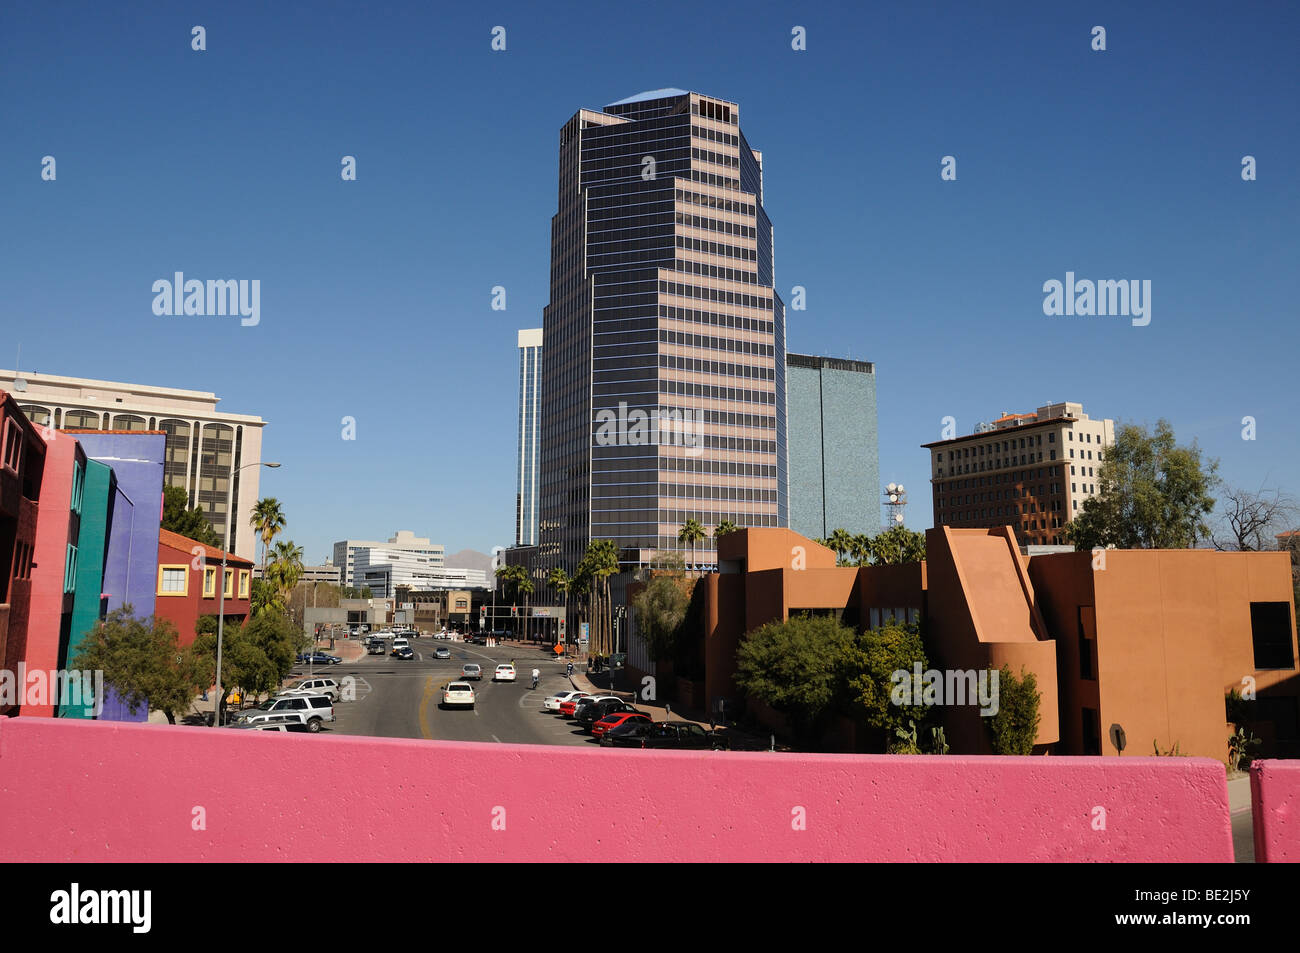 Downtown Tucson, Arizona, USA. Stock Photo